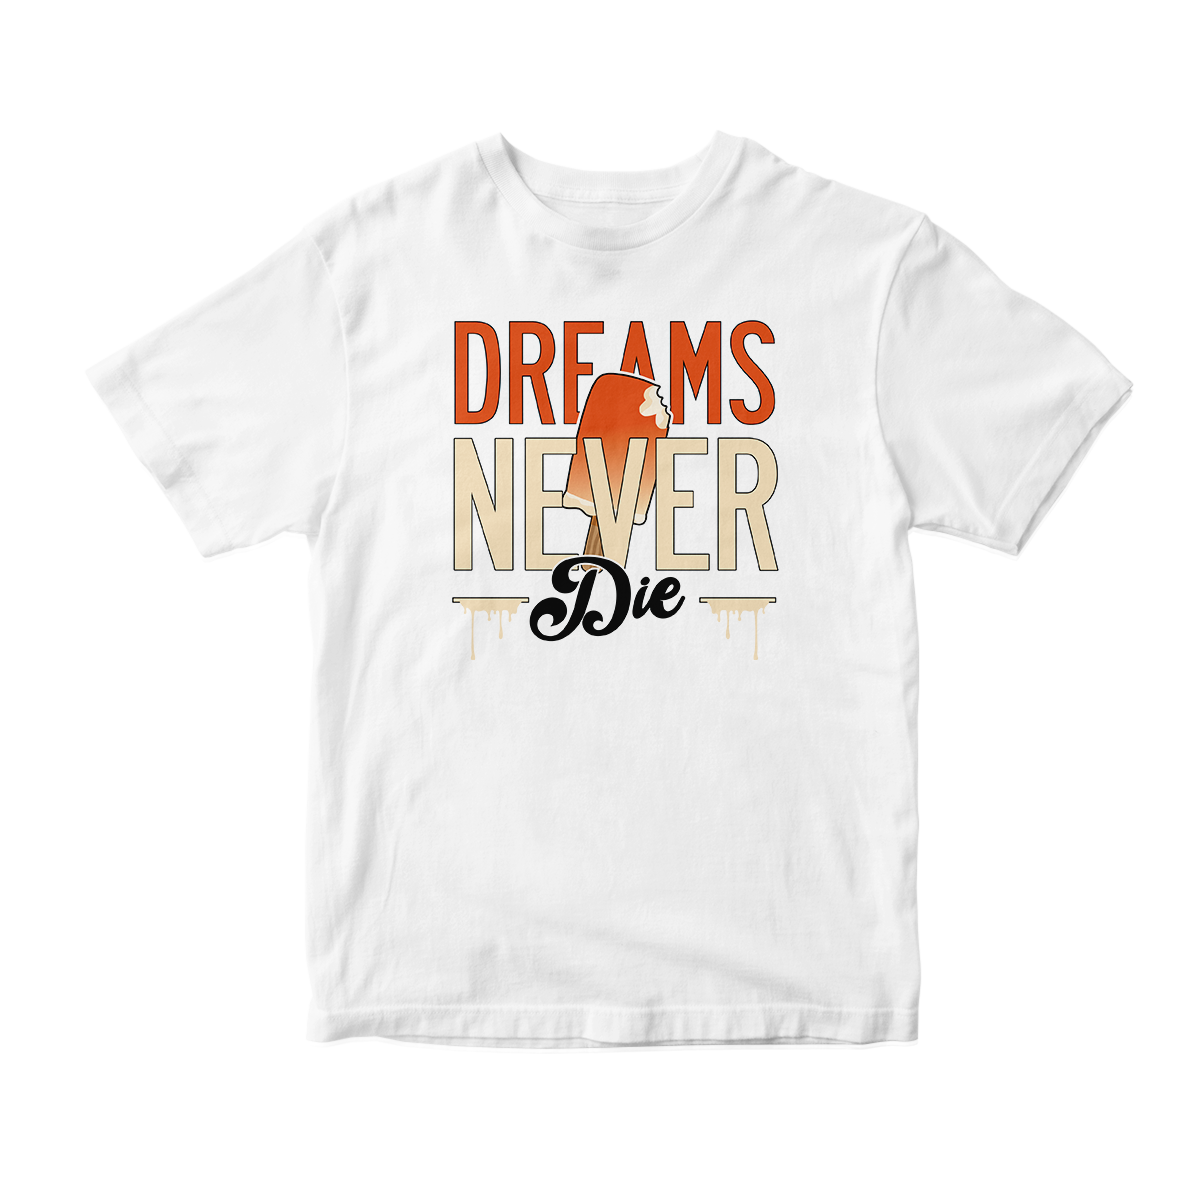 'Dreams Never Die' in Backboard 3.0 CW Short Sleeve Tee